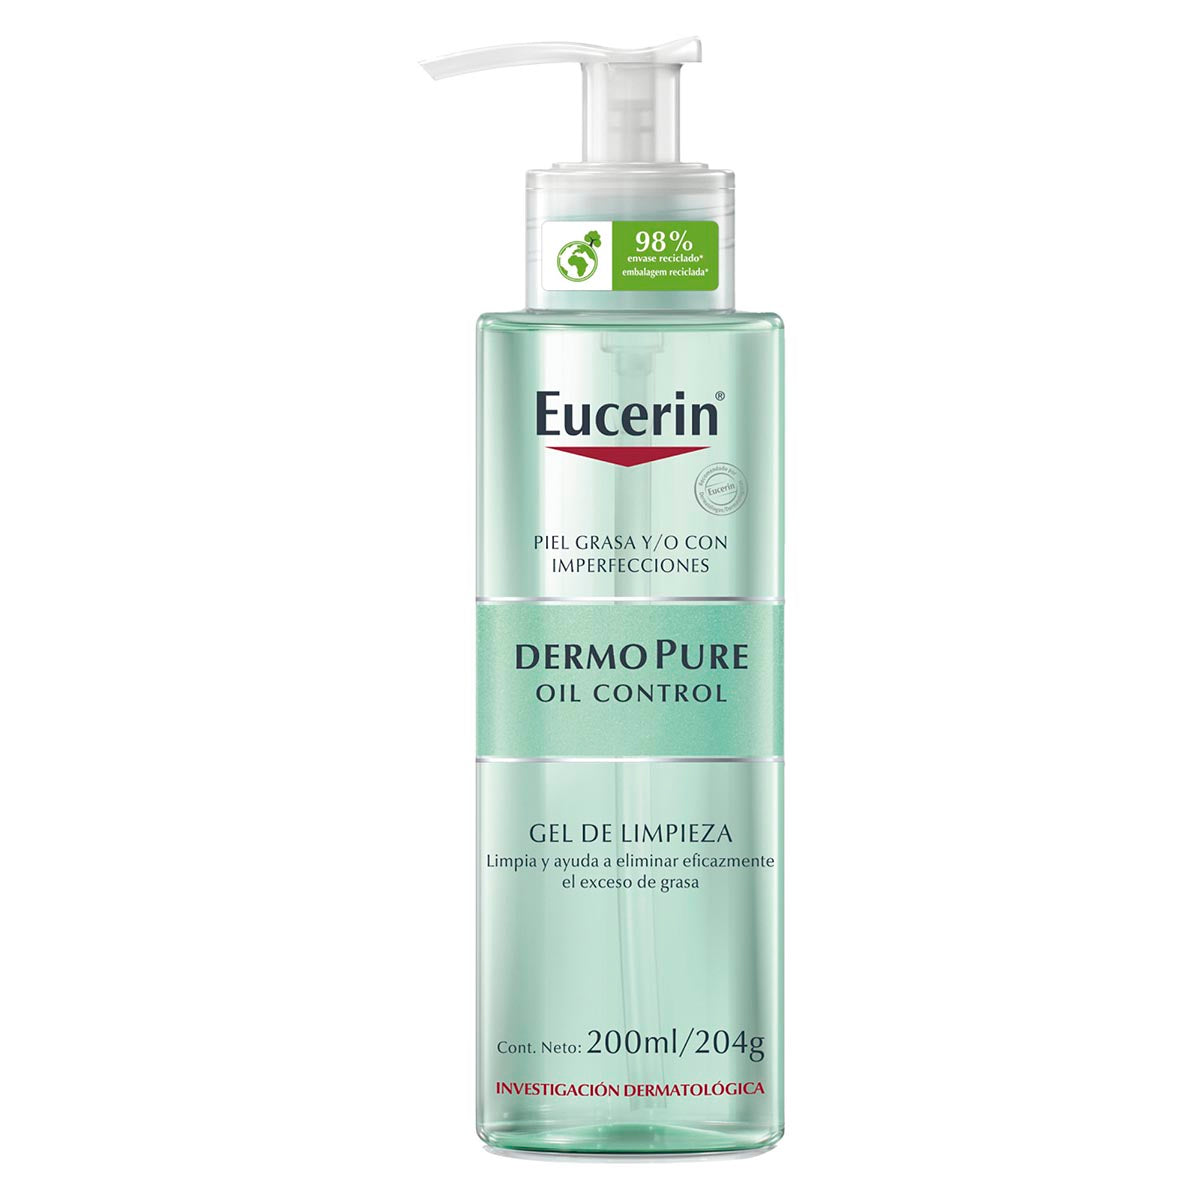 Eucerin gel limpiador facial dermopure piel grasa y/o con tendencia acneica 200ml.